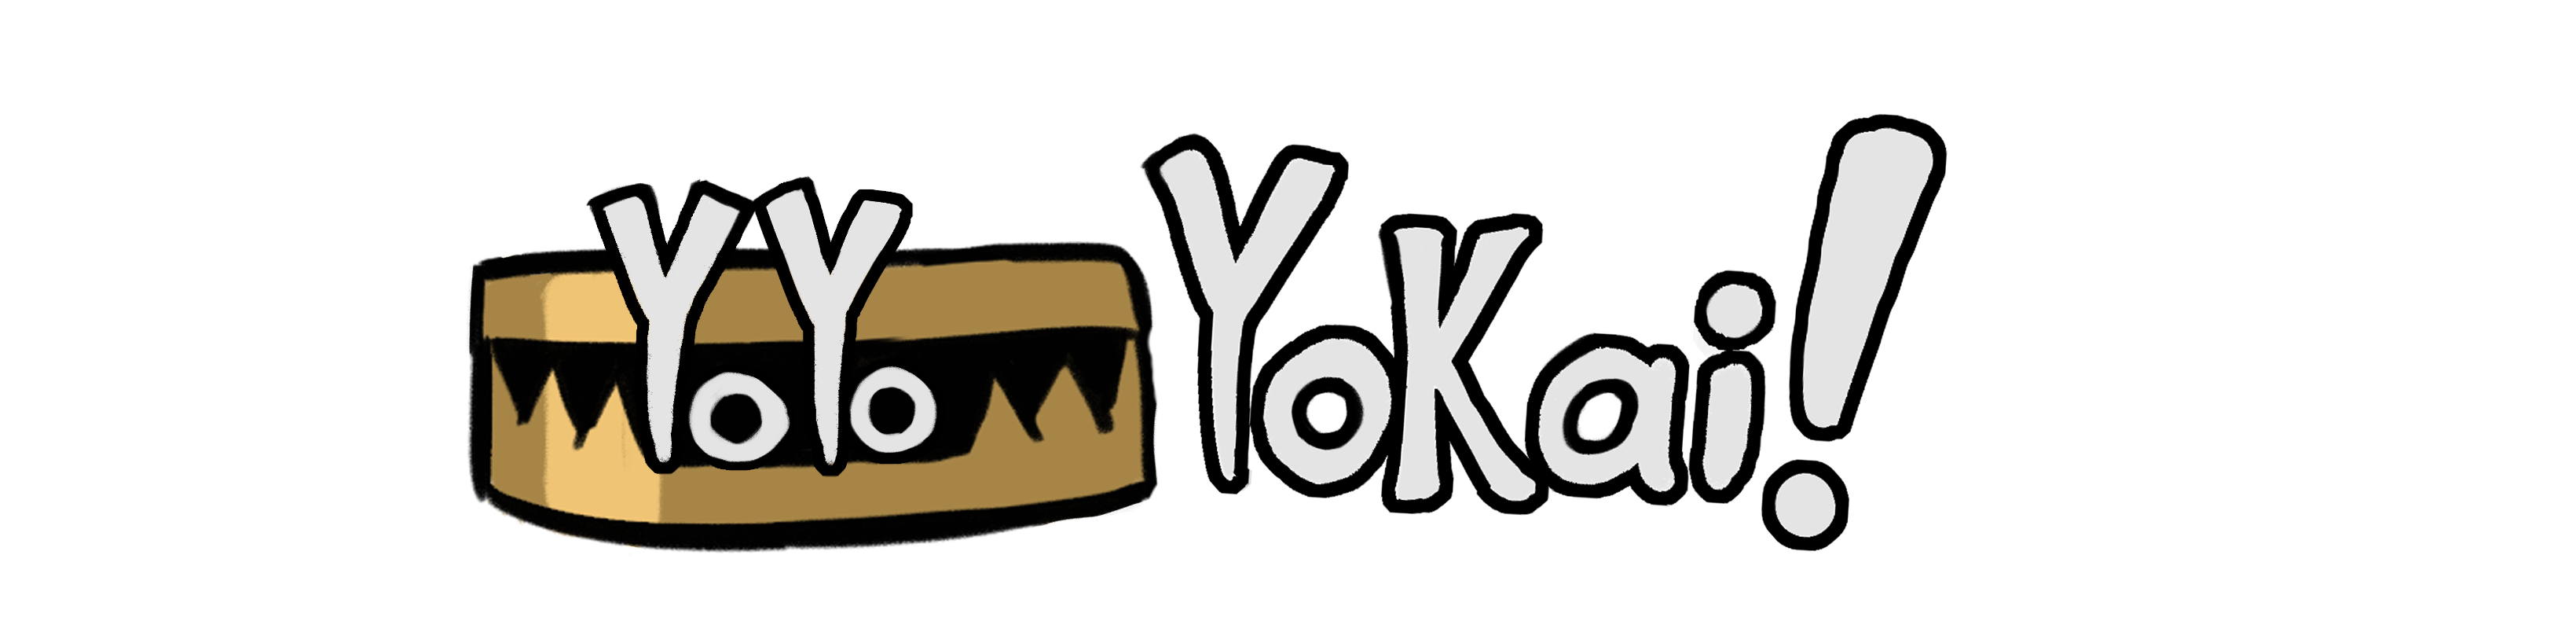 YoYoYokai